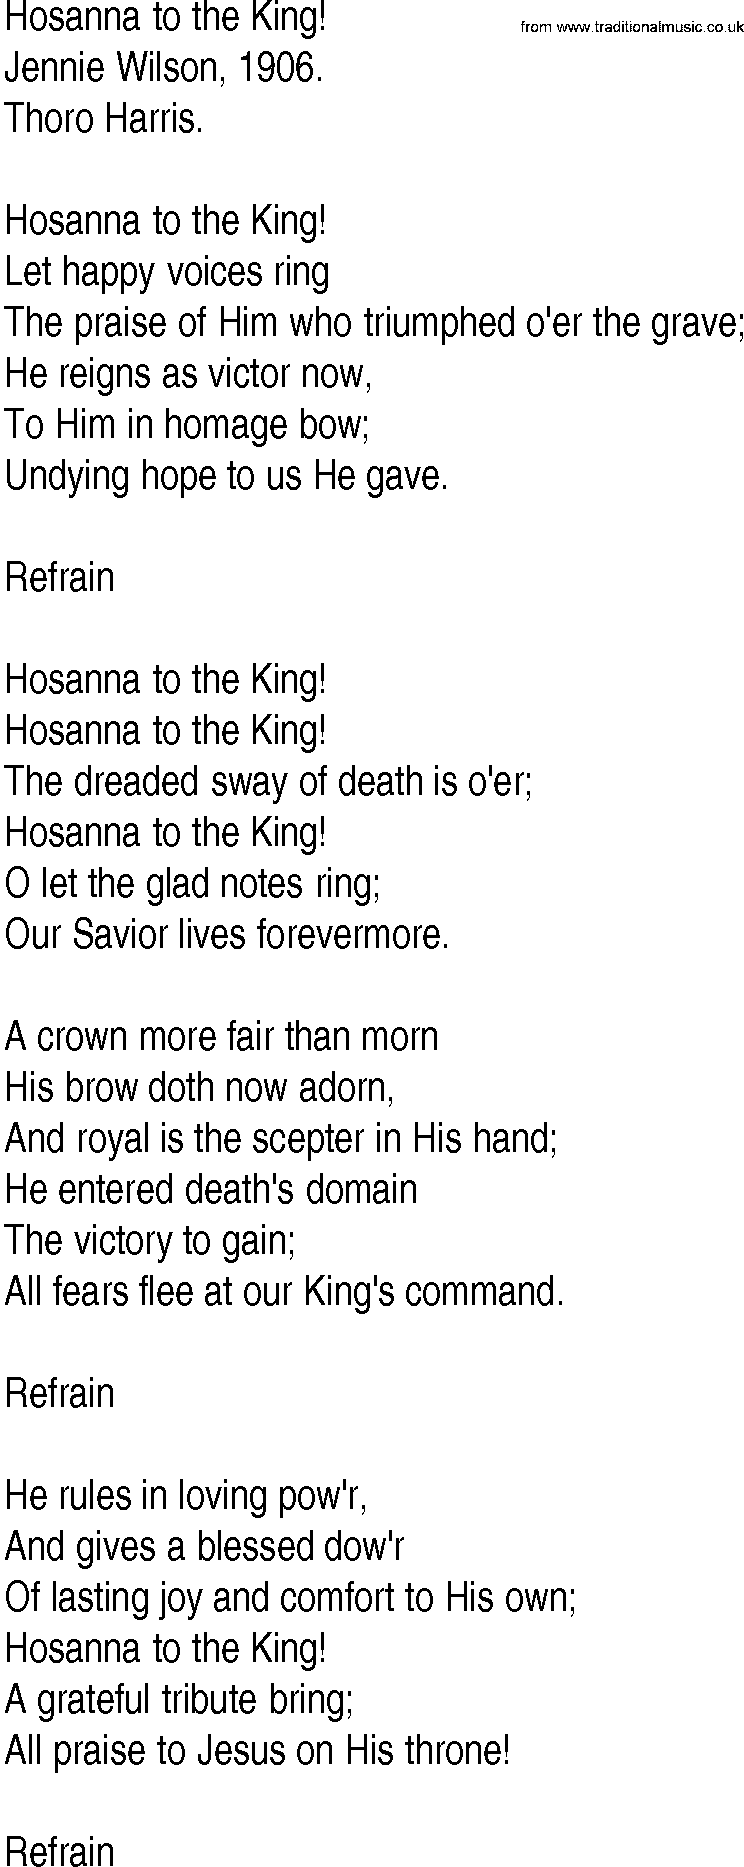 Hymn and Gospel Song: Hosanna to the King! by Jennie Wilson lyrics